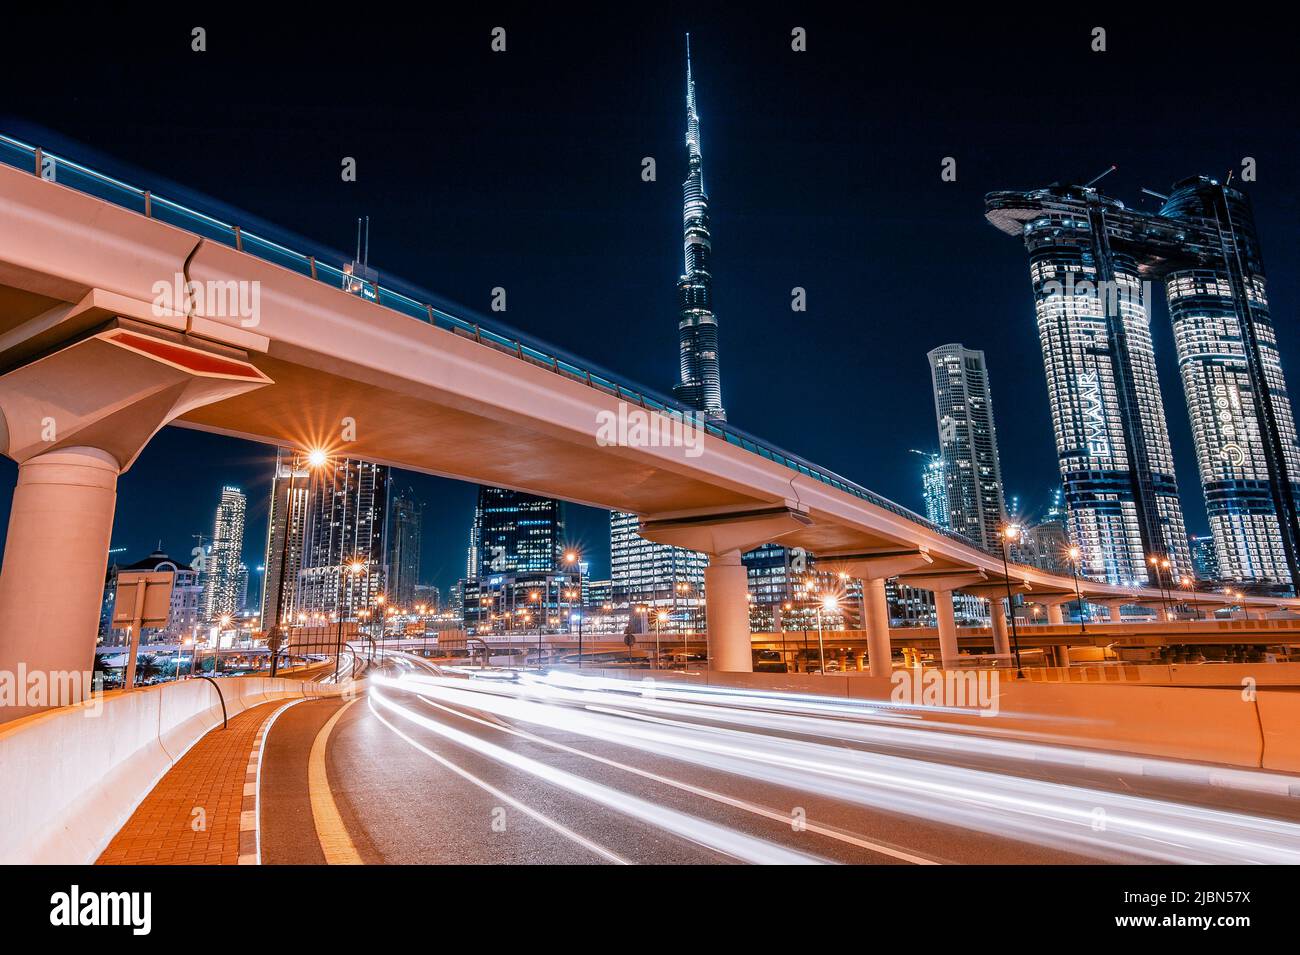 Dubaï, Émirats arabes Unis : métro et voitures rapides la nuit dans le centre-ville de Dubaï avec le plus haut bâtiment du monde, le Burj Khalifa, en arrière-plan. Banque D'Images